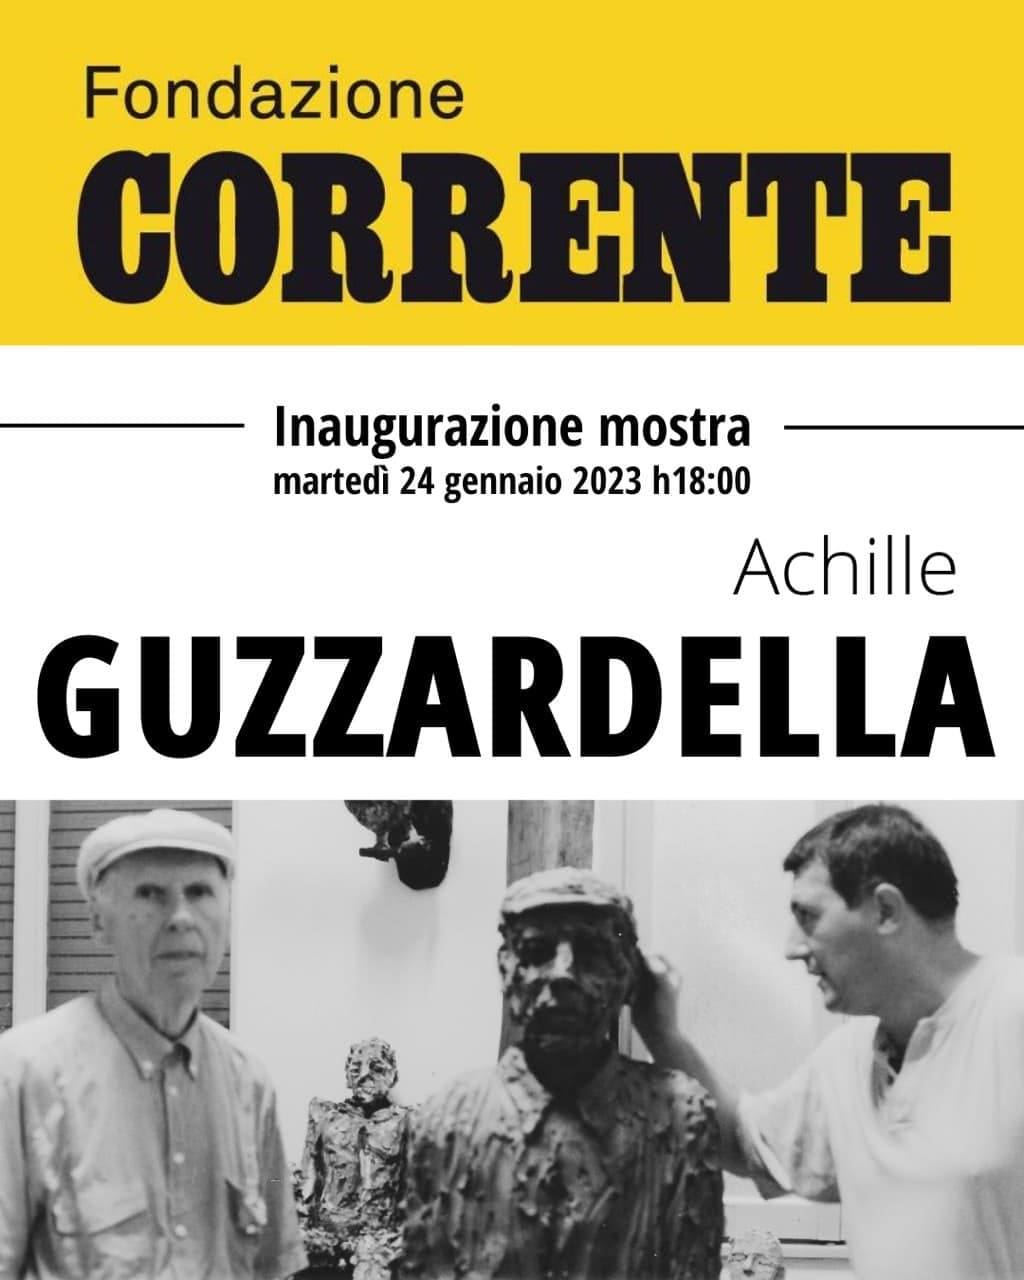 Achille Guzzardella e Corrente